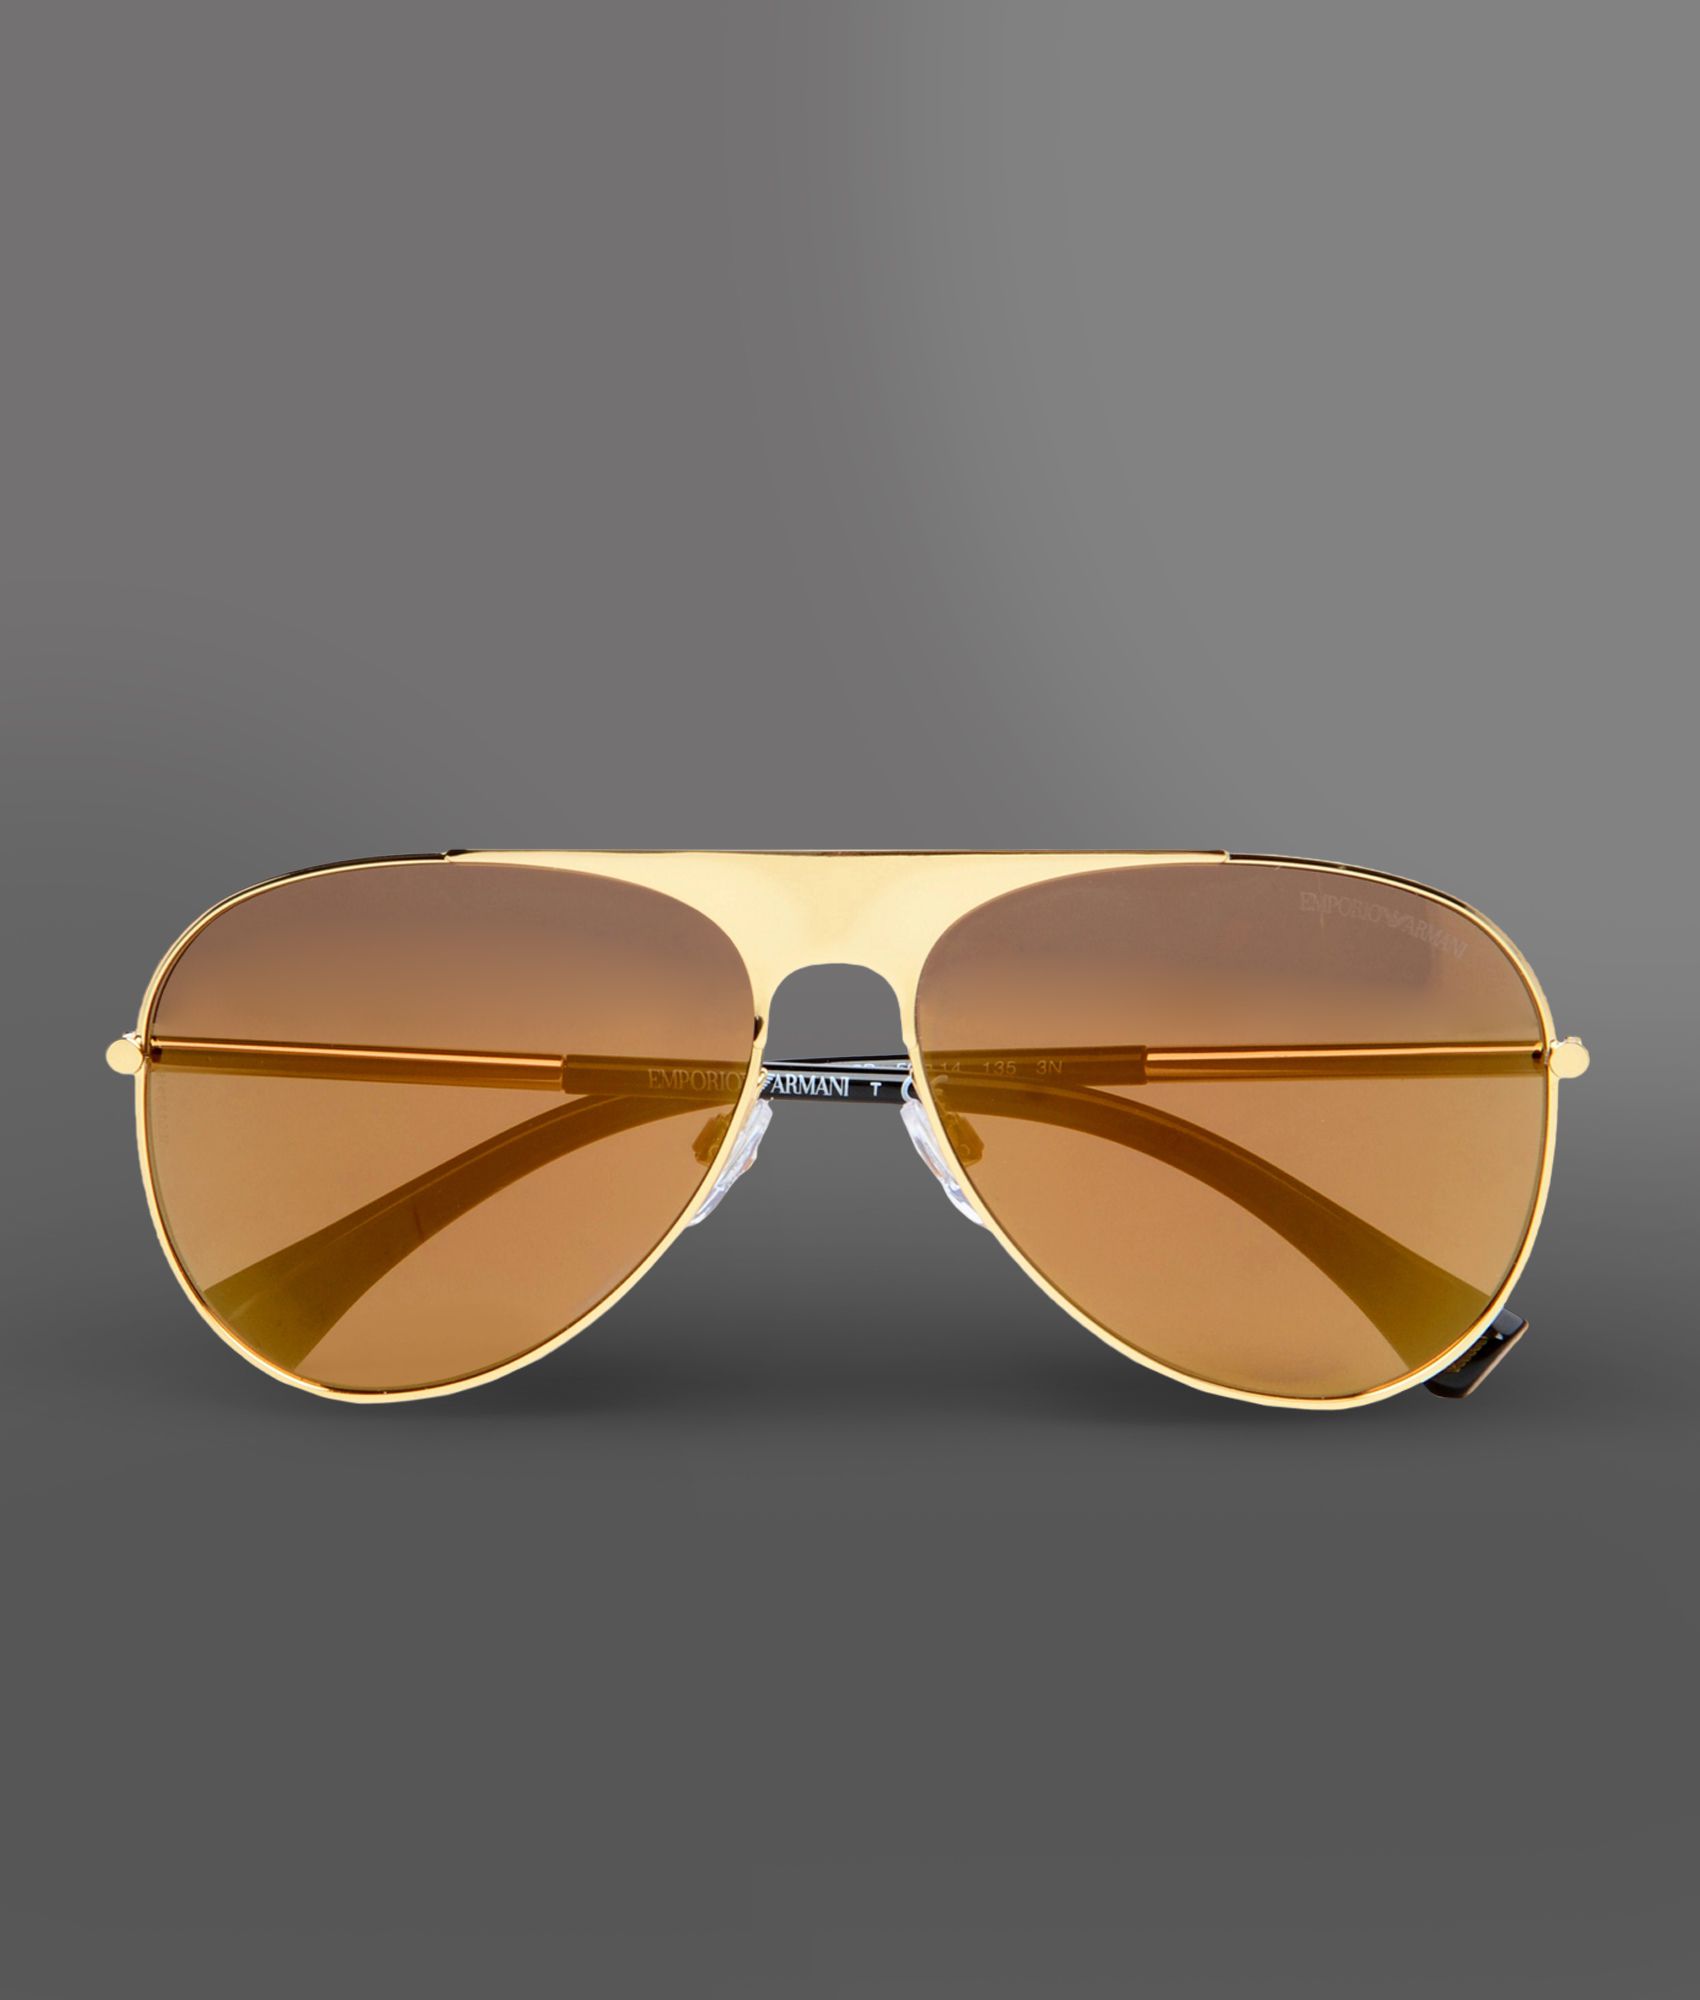 Emporio Armani Sunglasses in Gold (Metallic) - Lyst